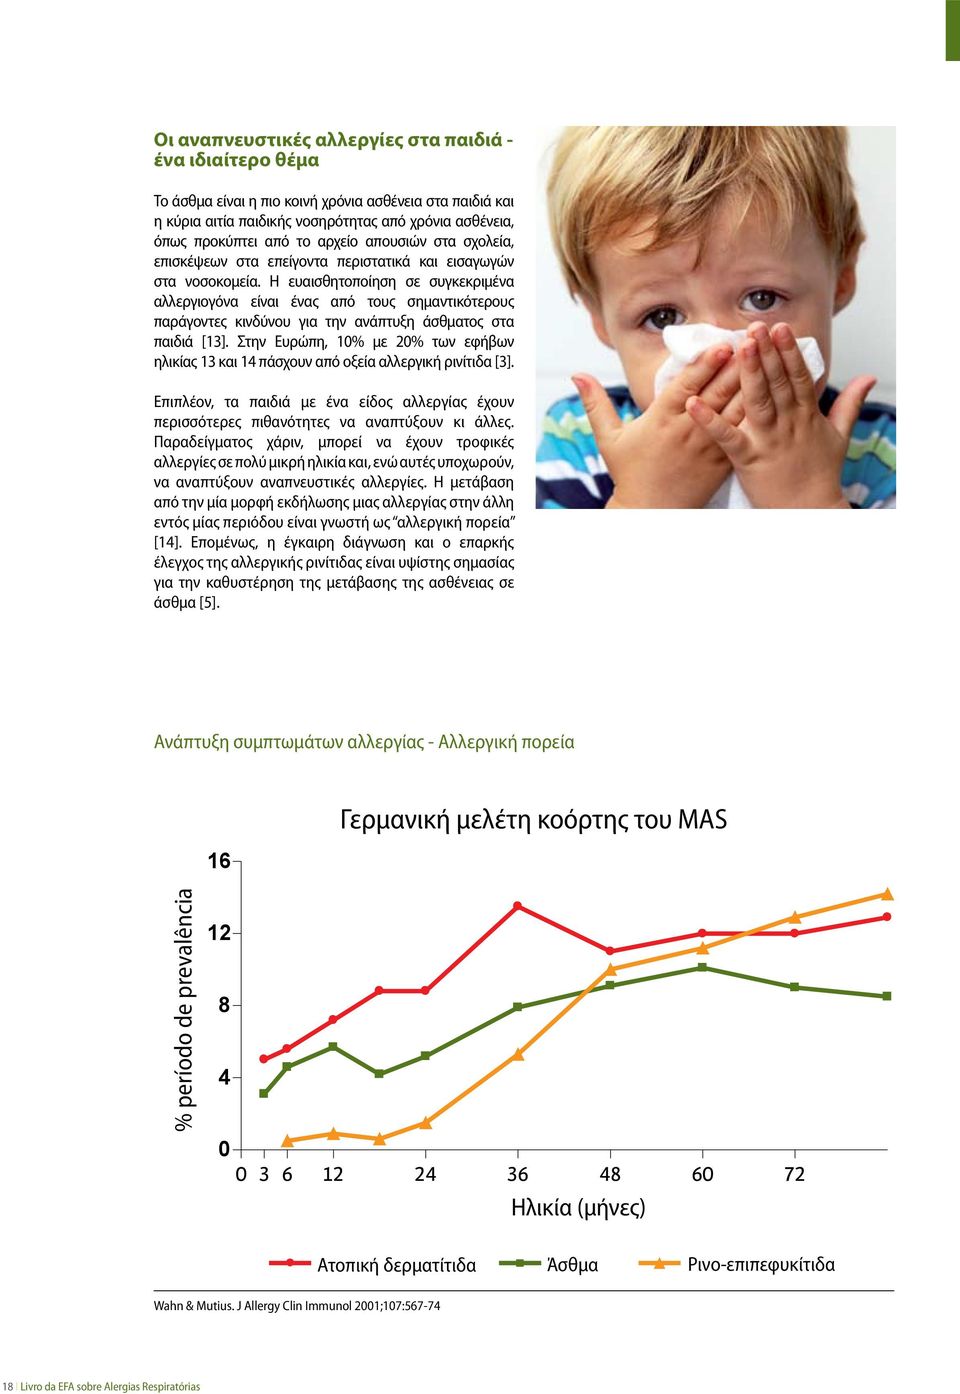 Η ευαισθητοποίηση σε συγκεκριμένα αλλεργιογόνα είναι ένας από τους σημαντικότερους παράγοντες κινδύνου για την ανάπτυξη άσθματος στα παιδιά [13].